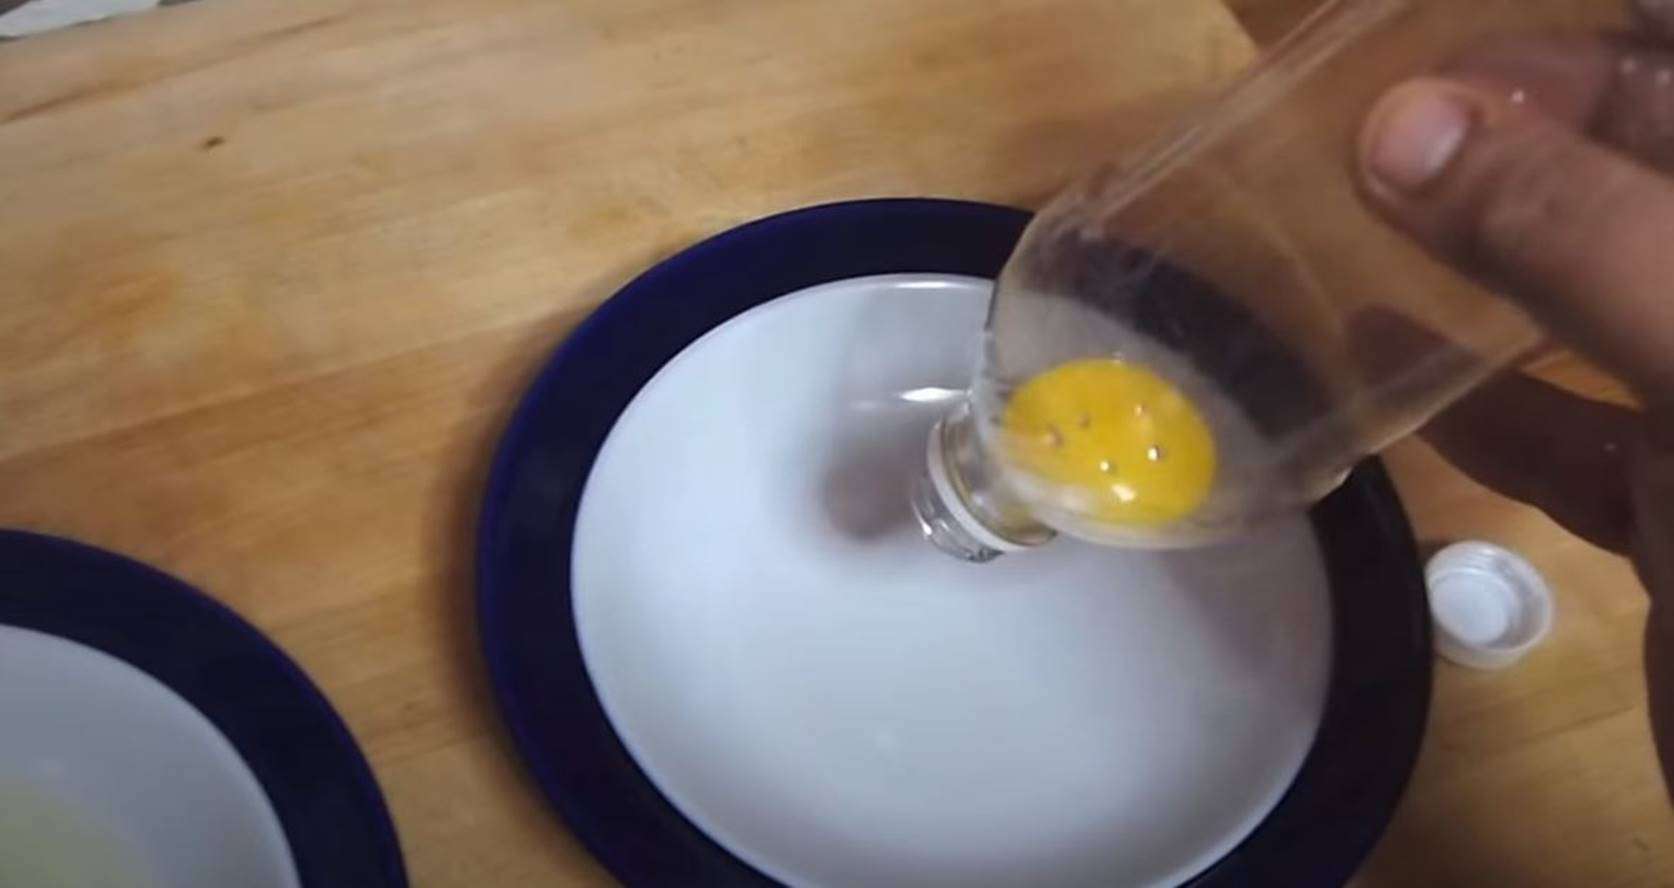 Use a garrafa pet para separar as claras das gemas dos ovos rápido sem sujar mãos